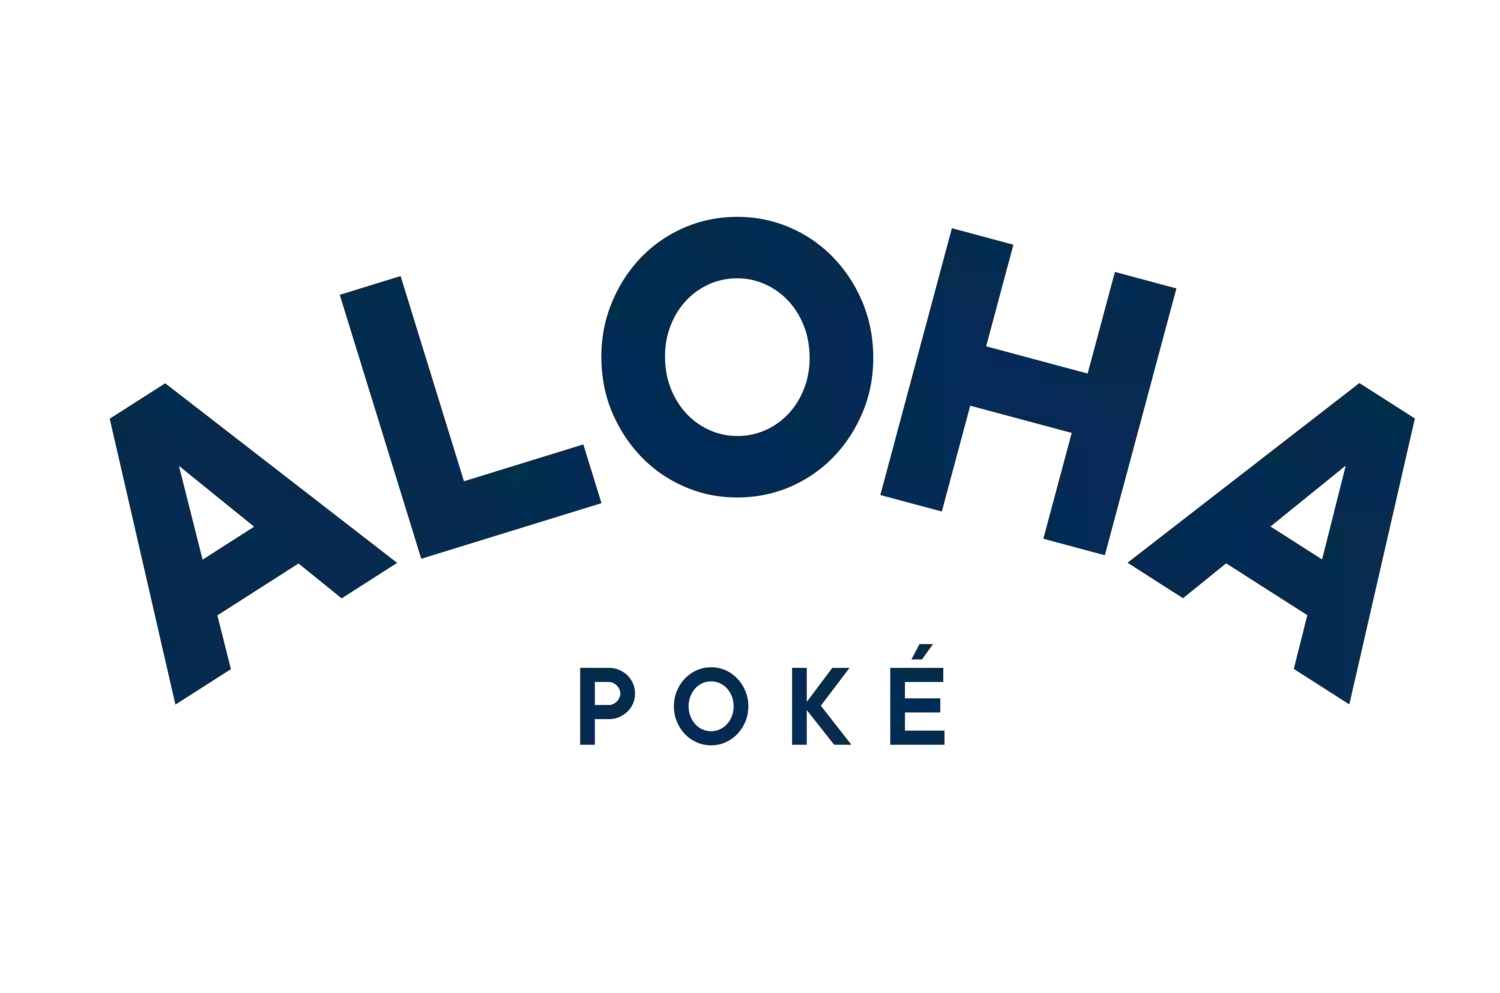 Aloha Poké